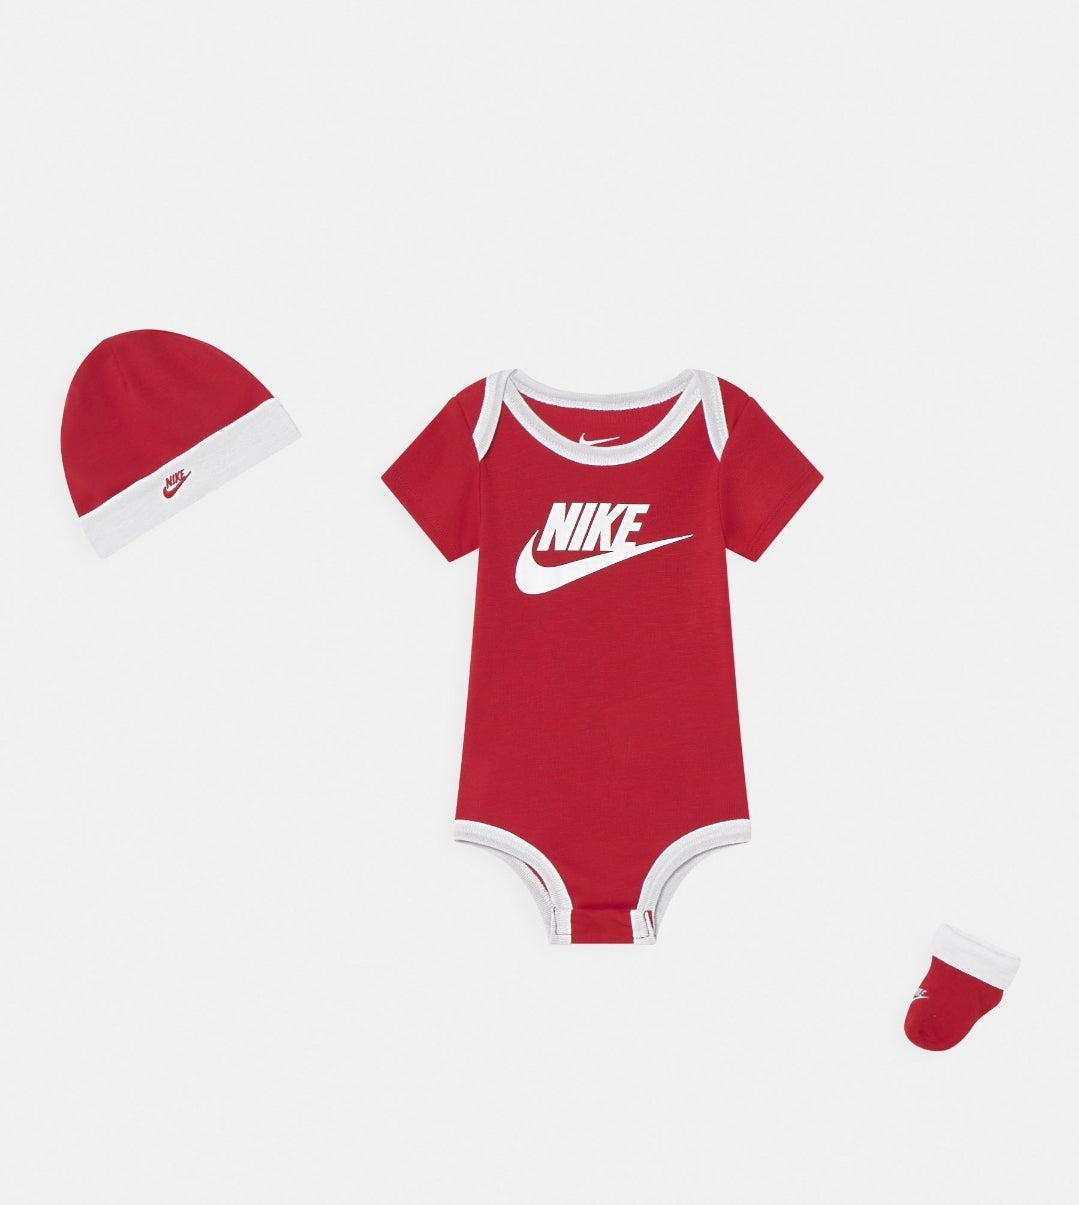 Nike coffret bébé Futura Rouge/blanc